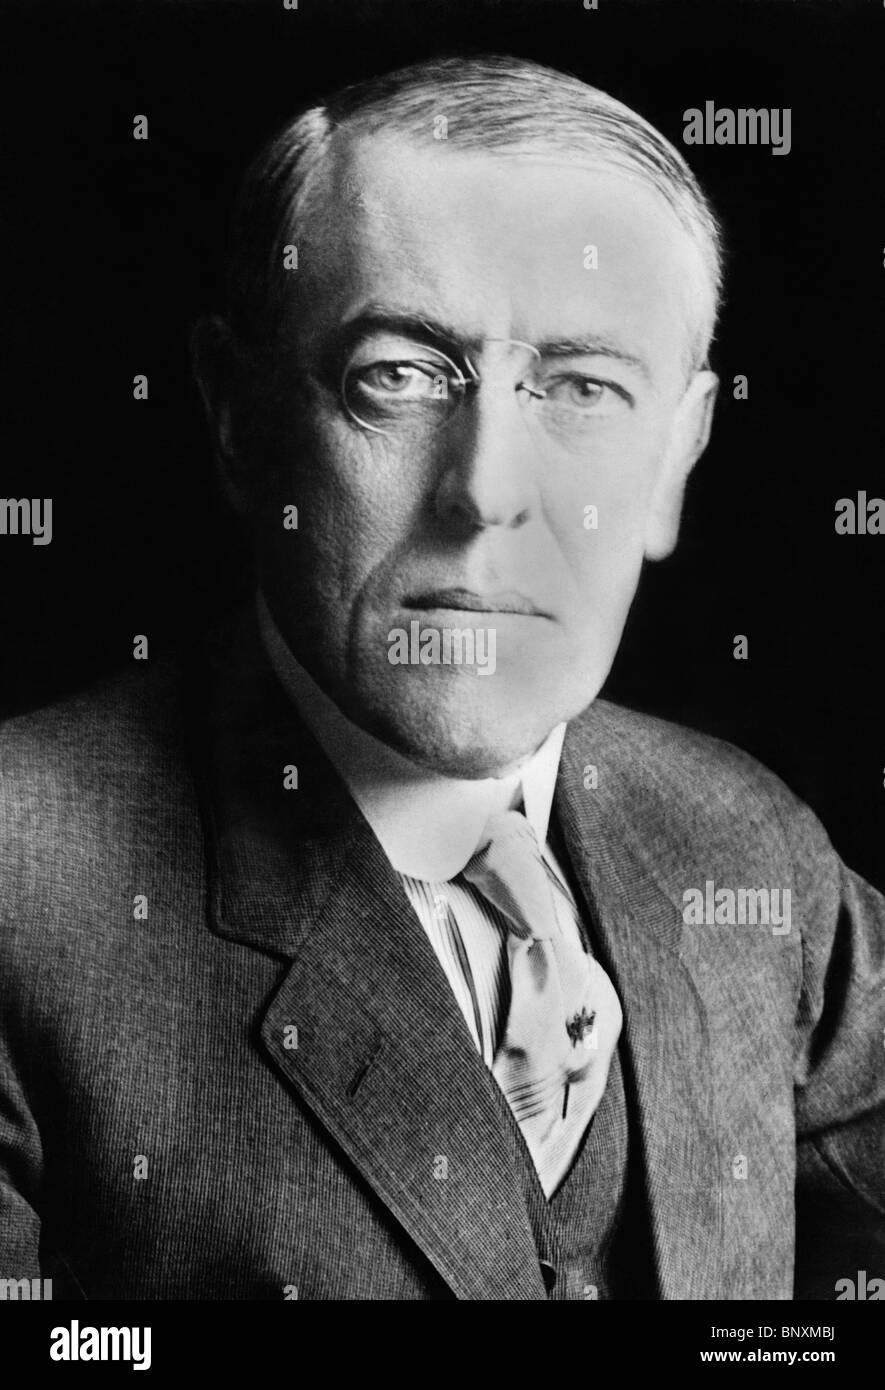 Portrait-Foto ca. 1916 von Woodrow Wilson (1856-1924) - der 28. US-Präsident (1913-1921). Stockfoto